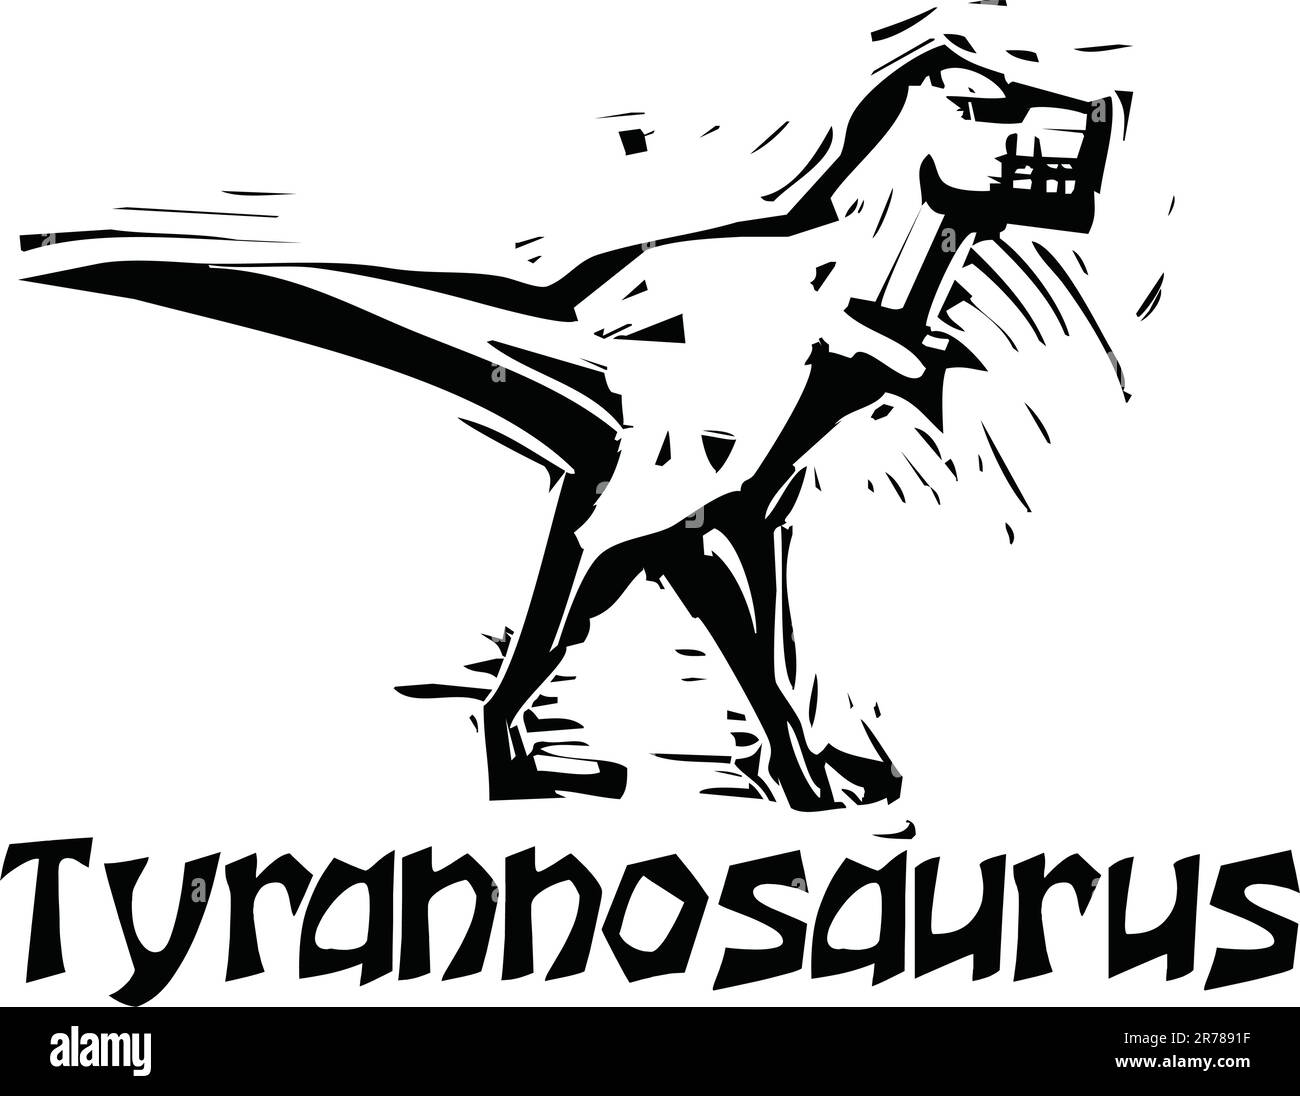 Einfache grobe Holzschnitt Stil Darstellungen von einem Tyrannosaurus Rex Dinosaurier Stock Vektor